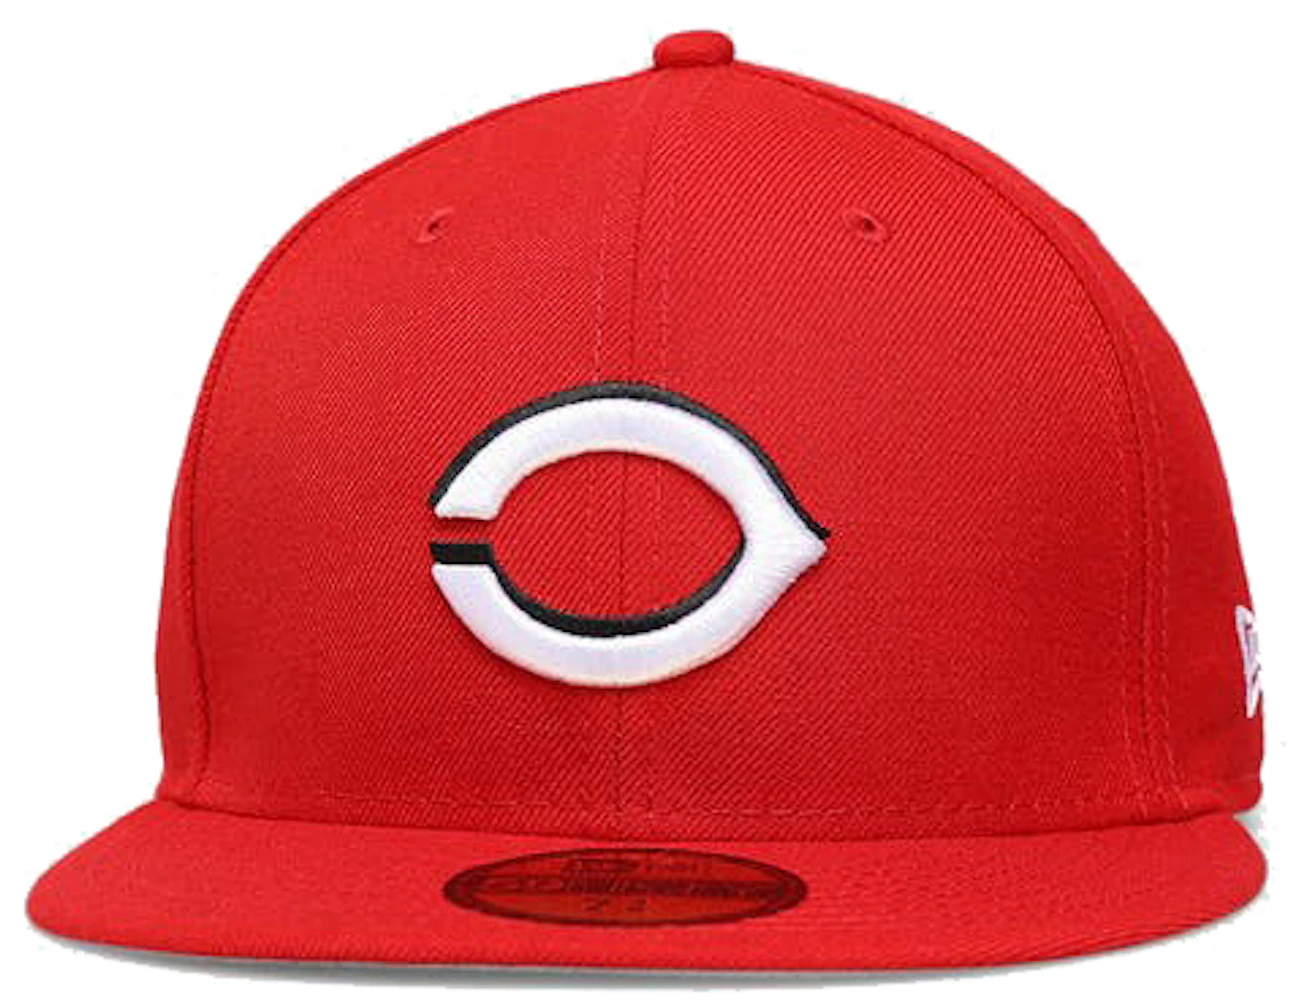 New Era Men's Caps - Red